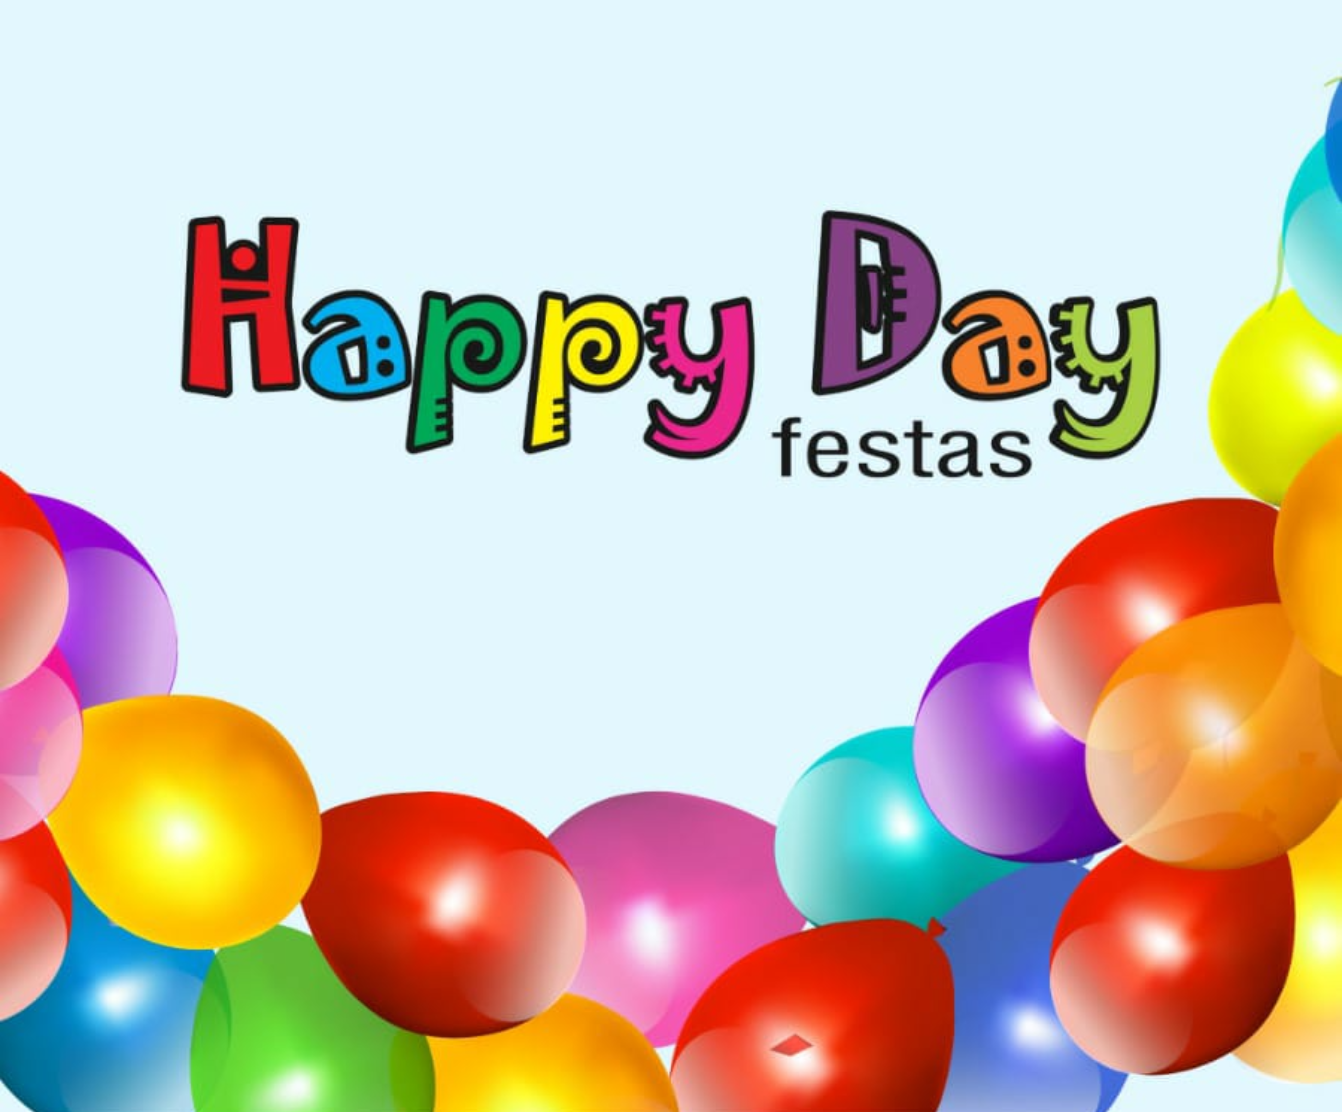 Happy Day Festas